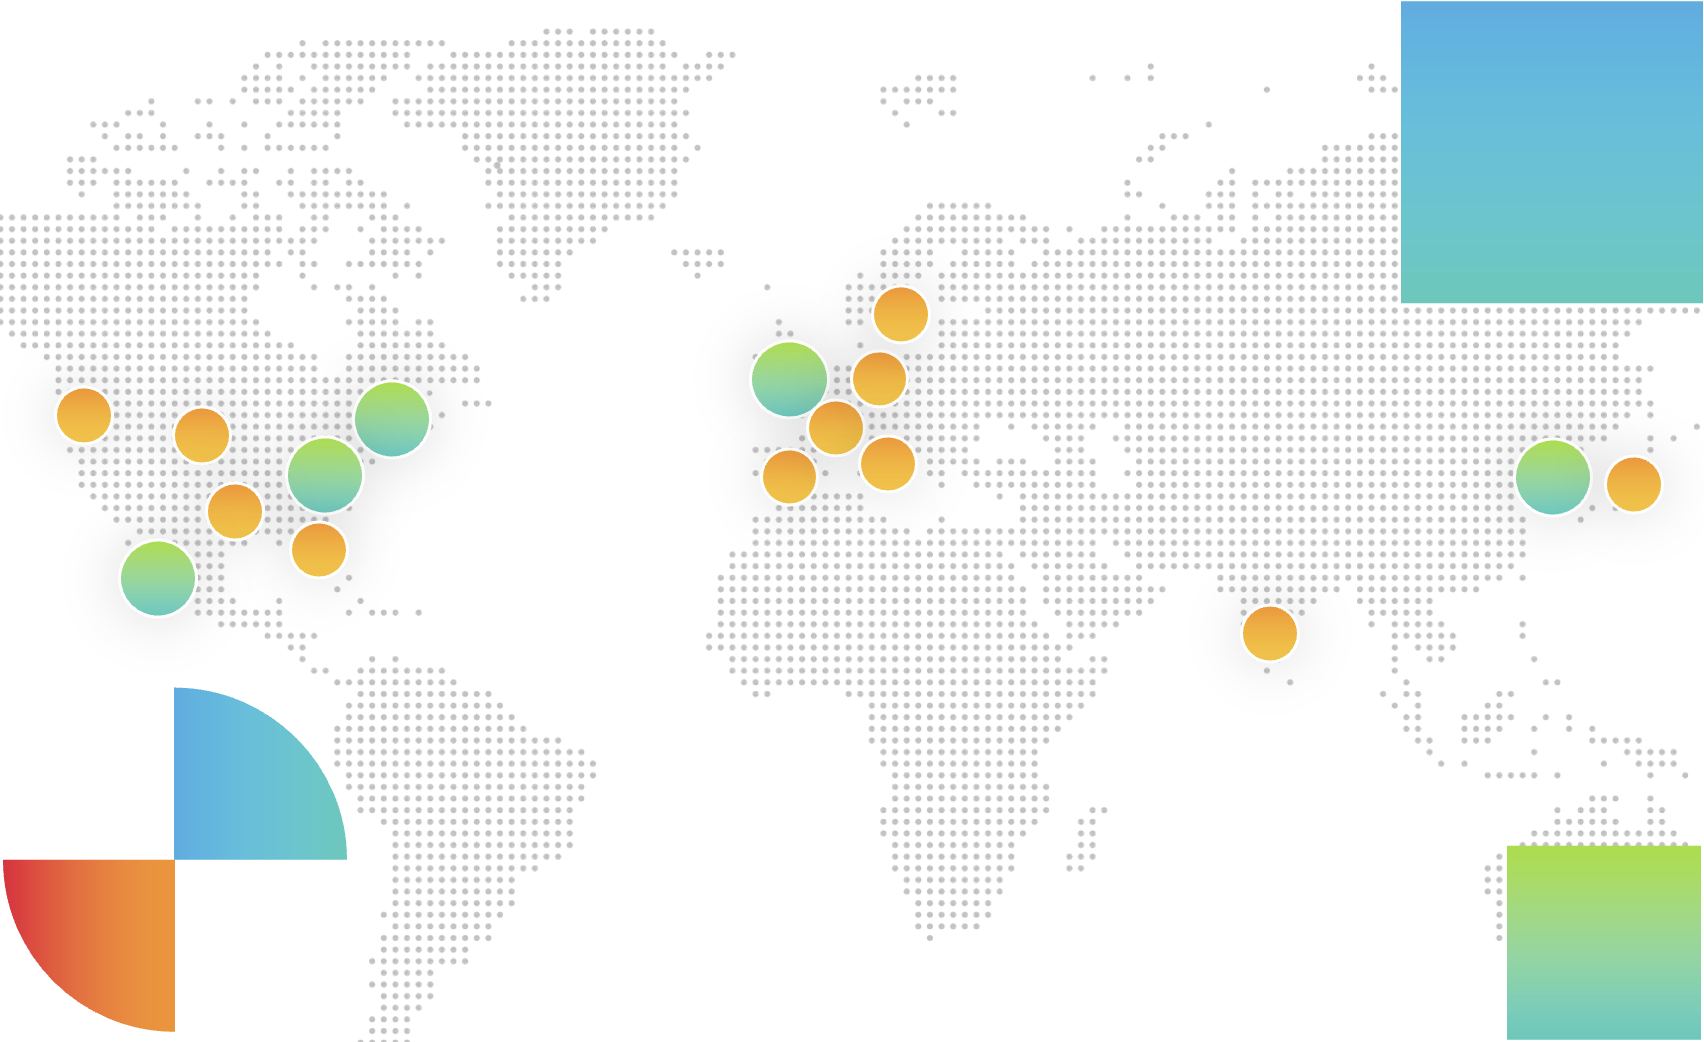 carte mondiale montrant la présence de sapio sciences